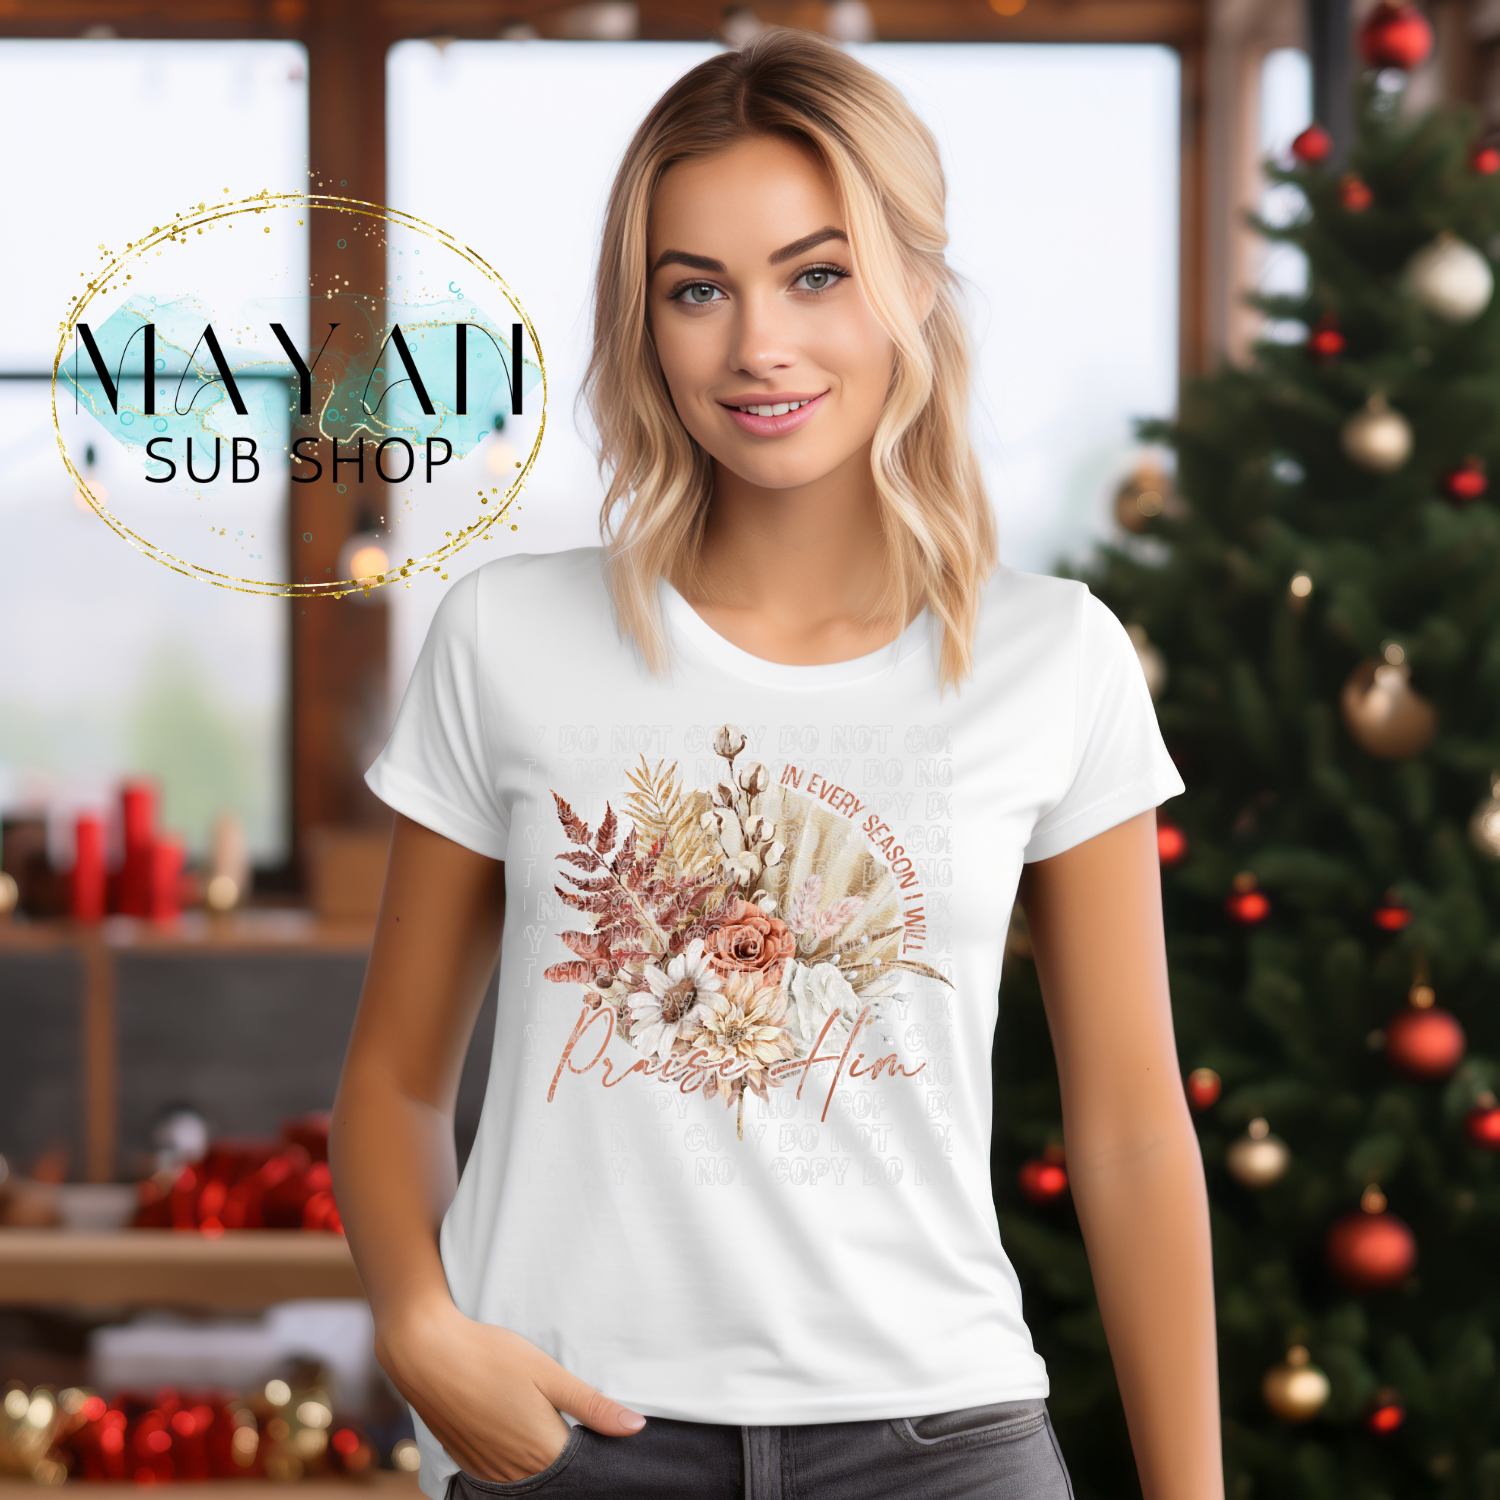 Praise Him shirt. -Mayan Sub Shop